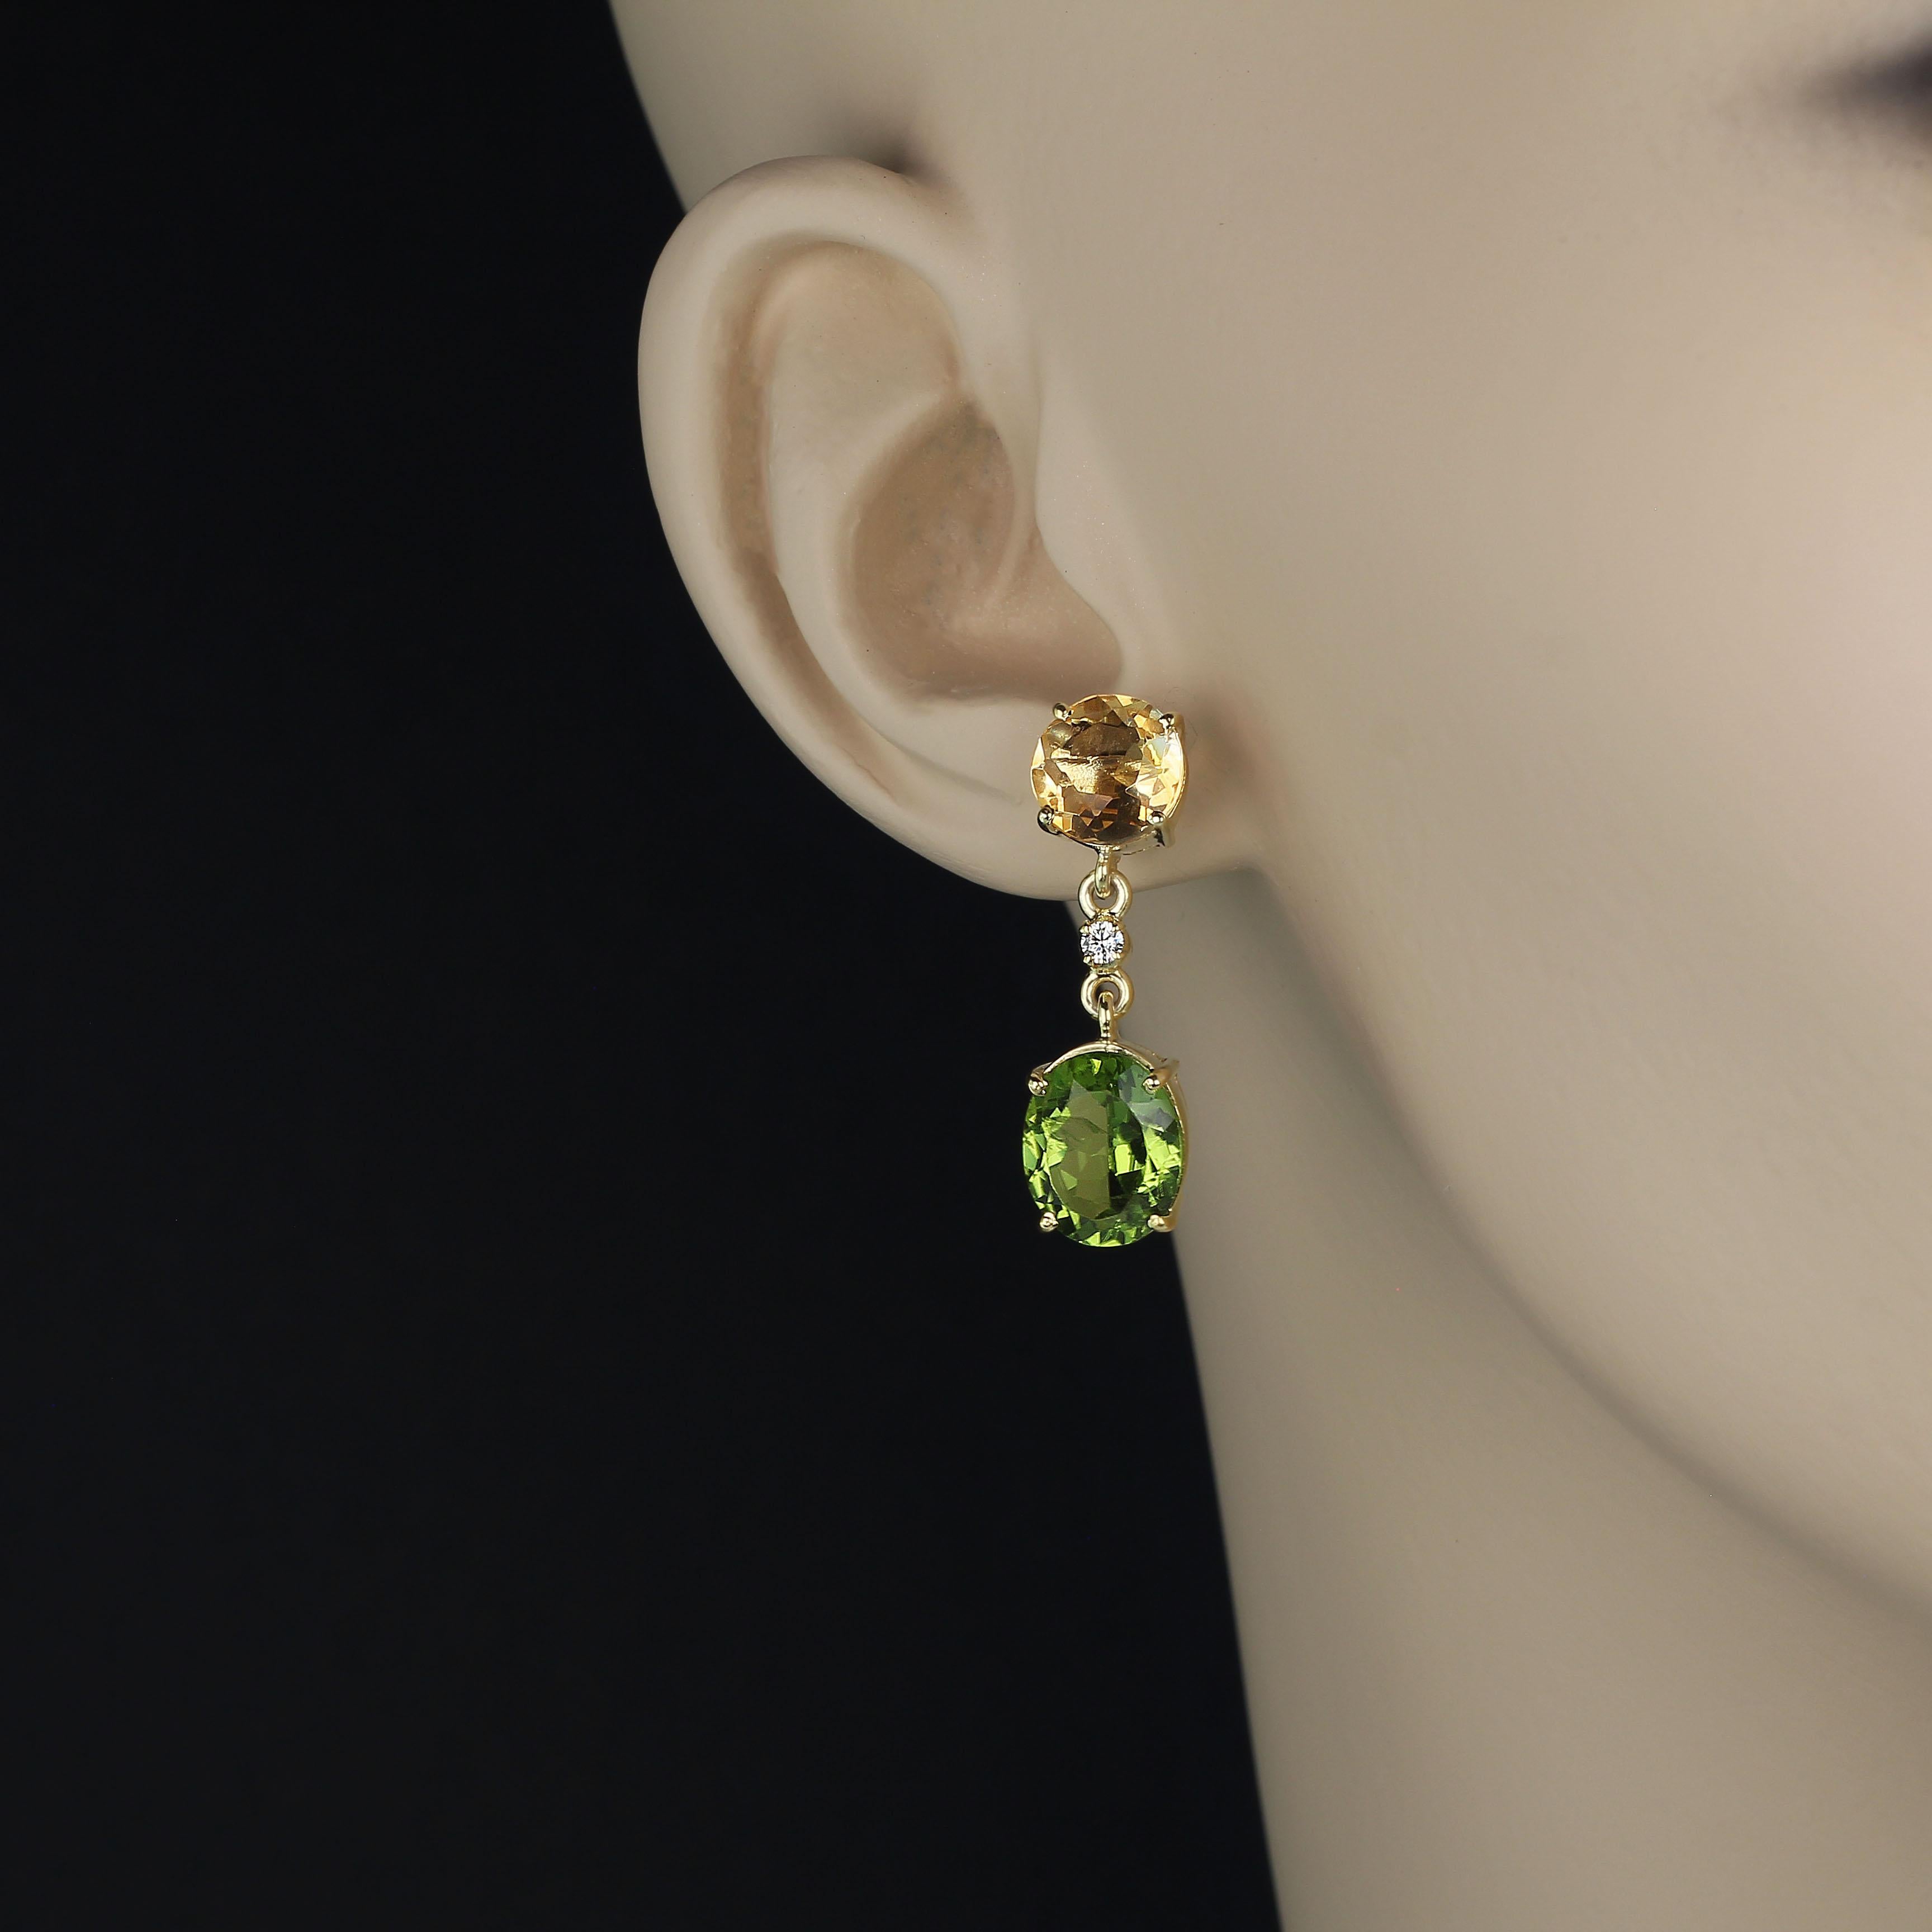 Goldener Citrin und grüner Brillantperidot als Ohrringe. Diese wunderschönen Ohrringe bestehen aus 8MM runden goldenen Citrinen mit einem Gesamtgewicht von 4,5ct und grünen ovalen Peridots mit einem Gesamtgewicht von 8,25ct. Diese Ohrringe haben